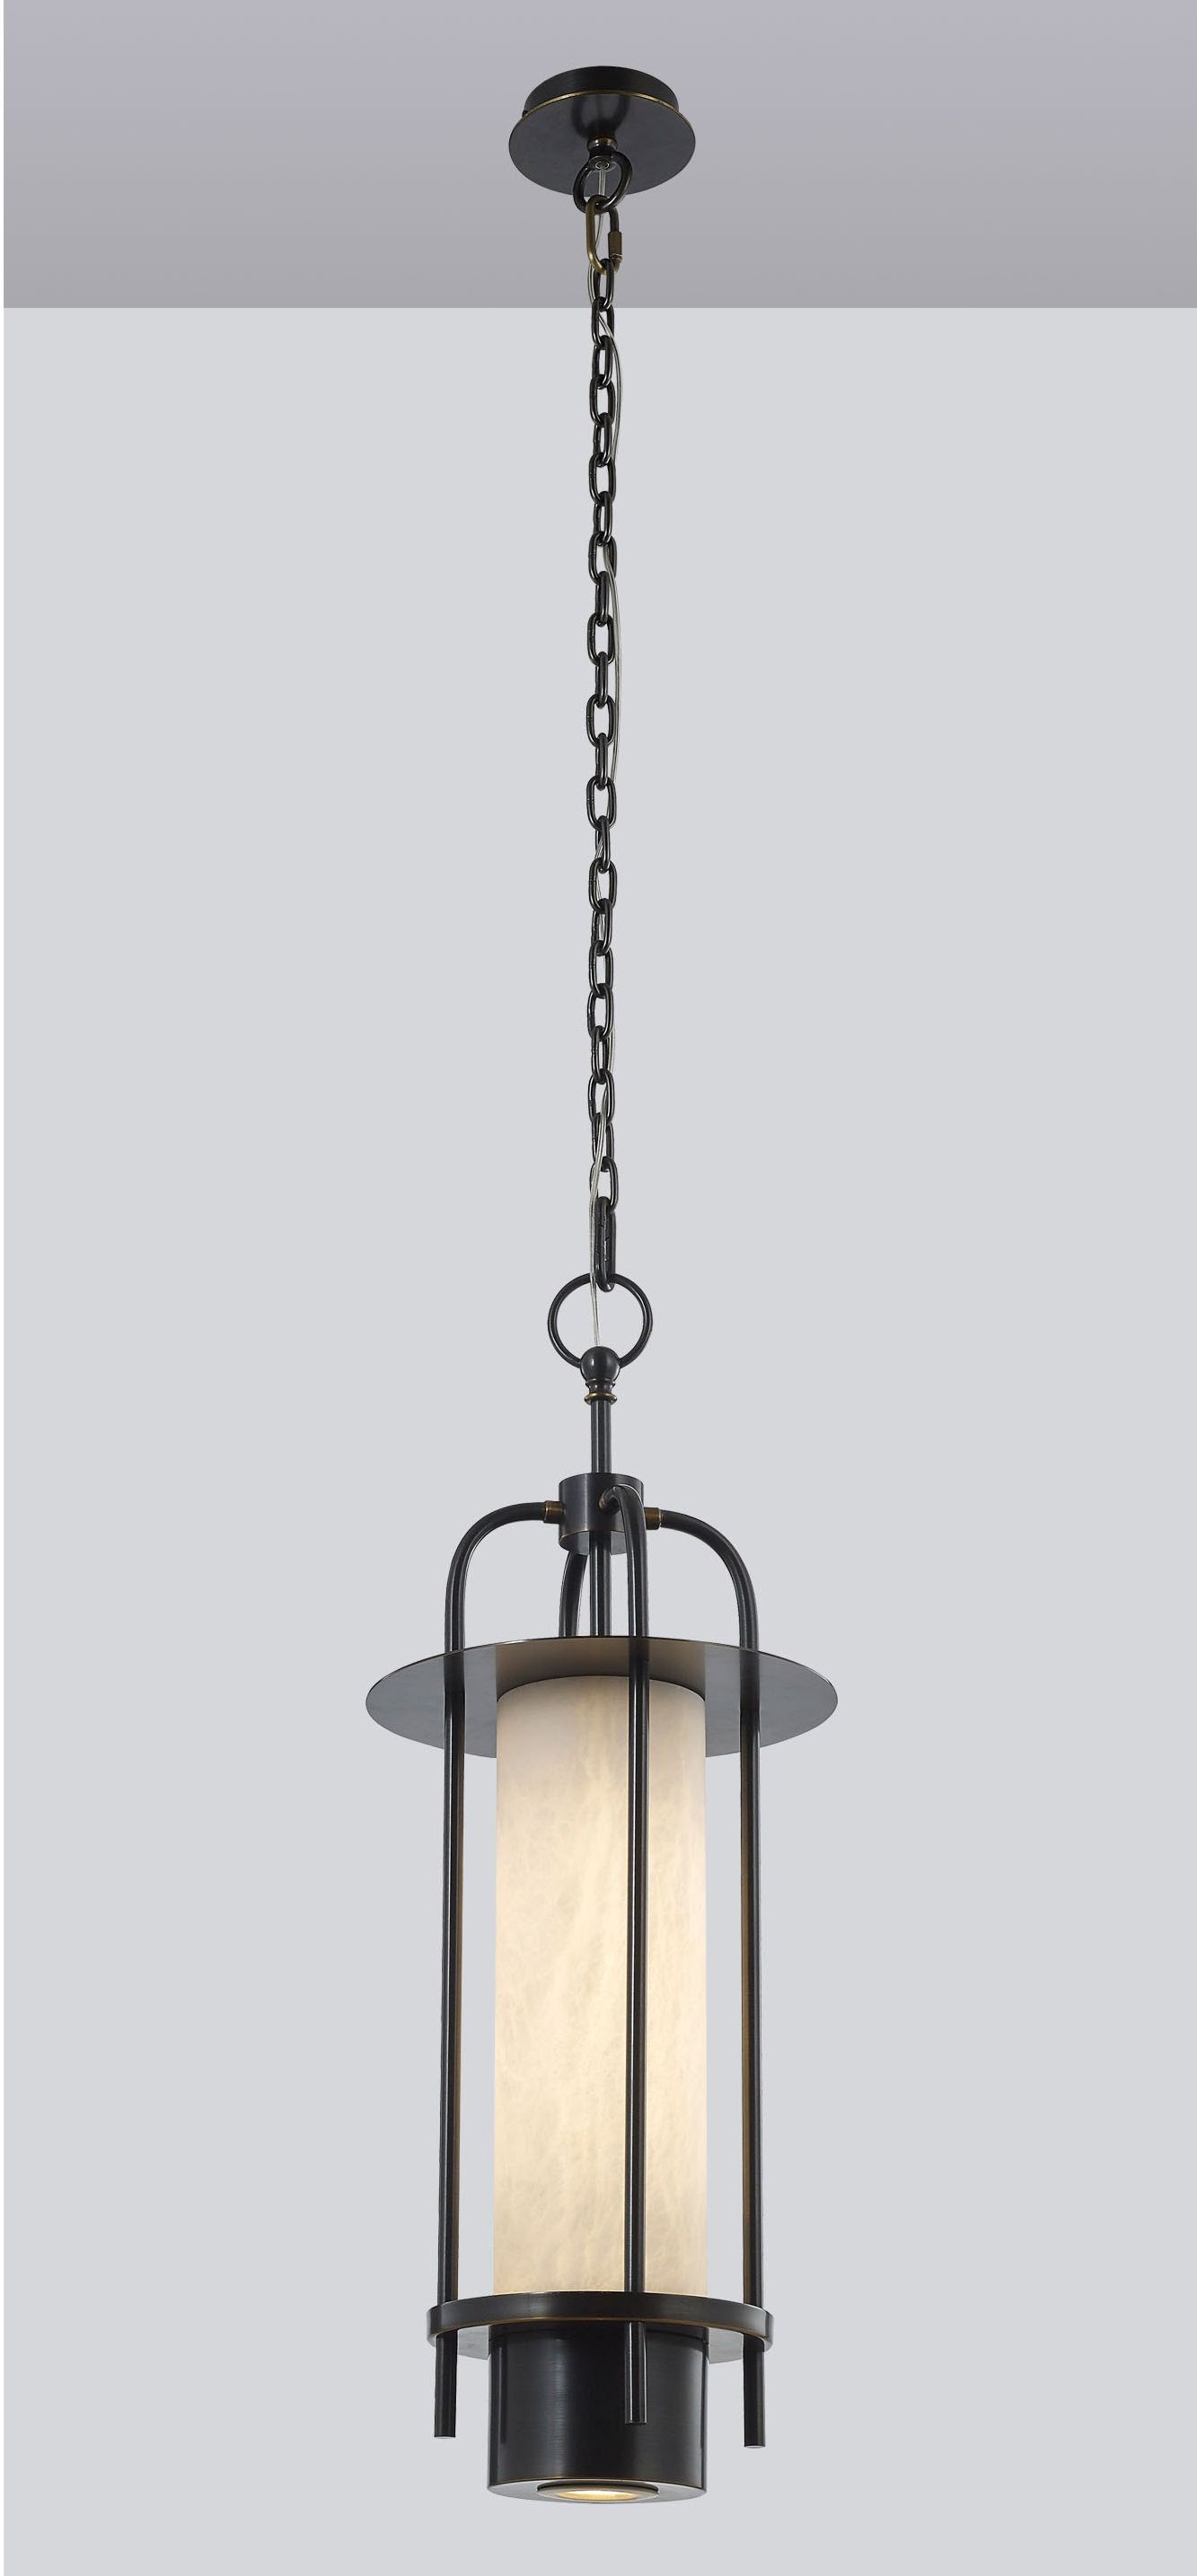 GIRZA by Romatti pendant lamp